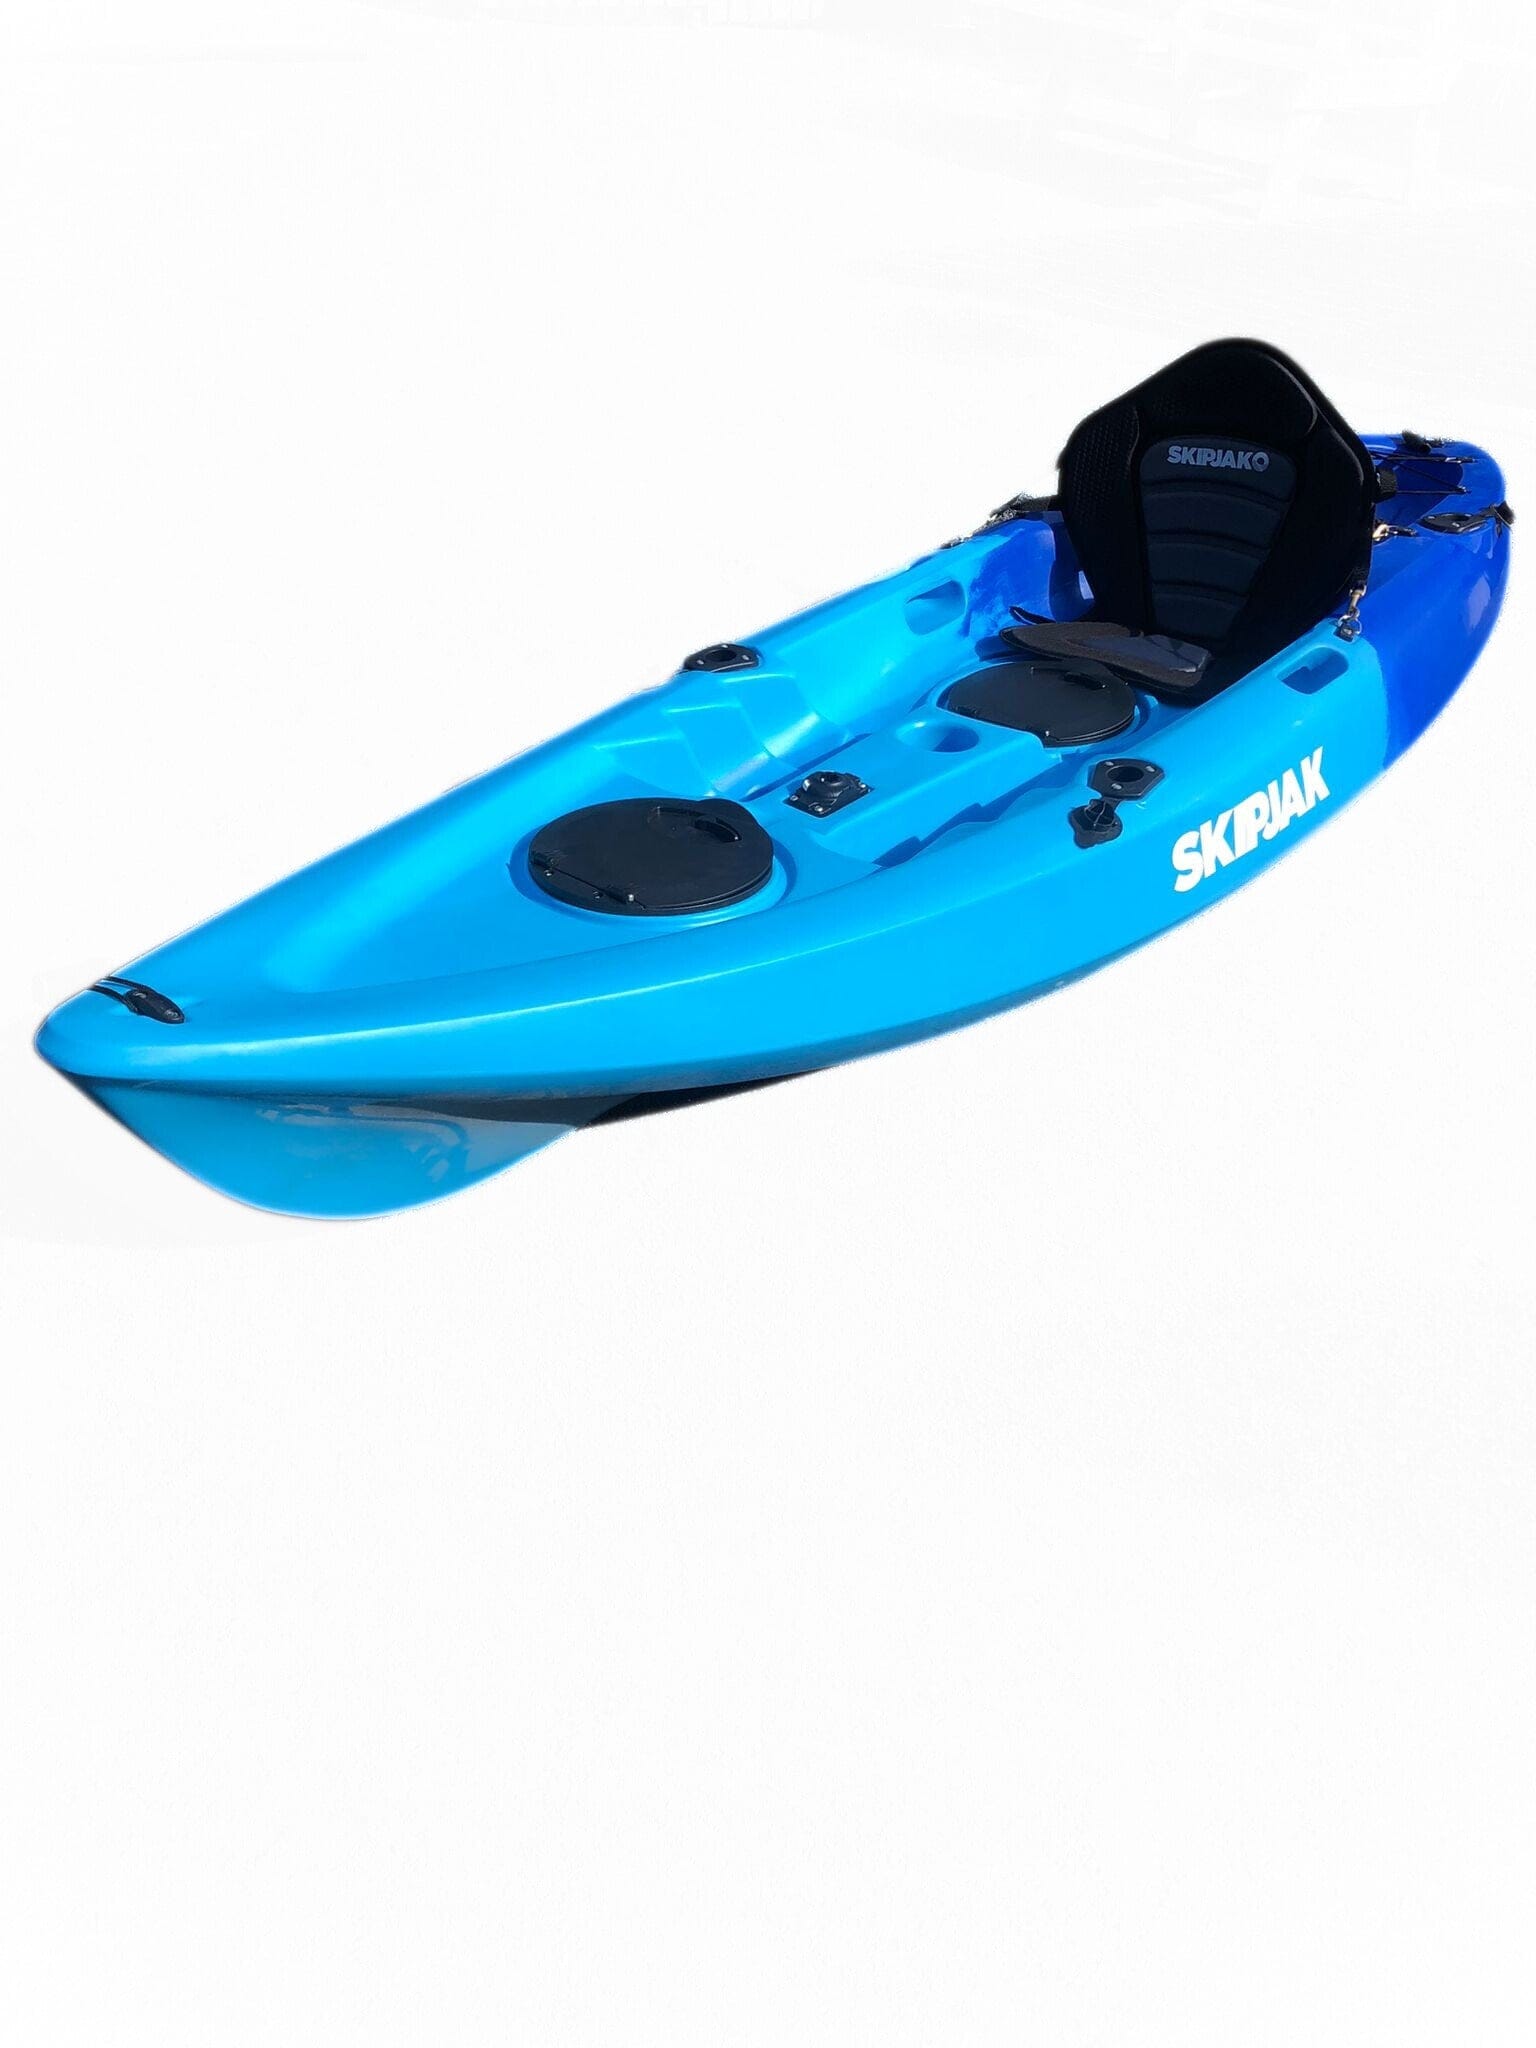 The SkipJak Reflection - 9ft 6 Luxury Kayak Kayaks Lake Land Kayaks 